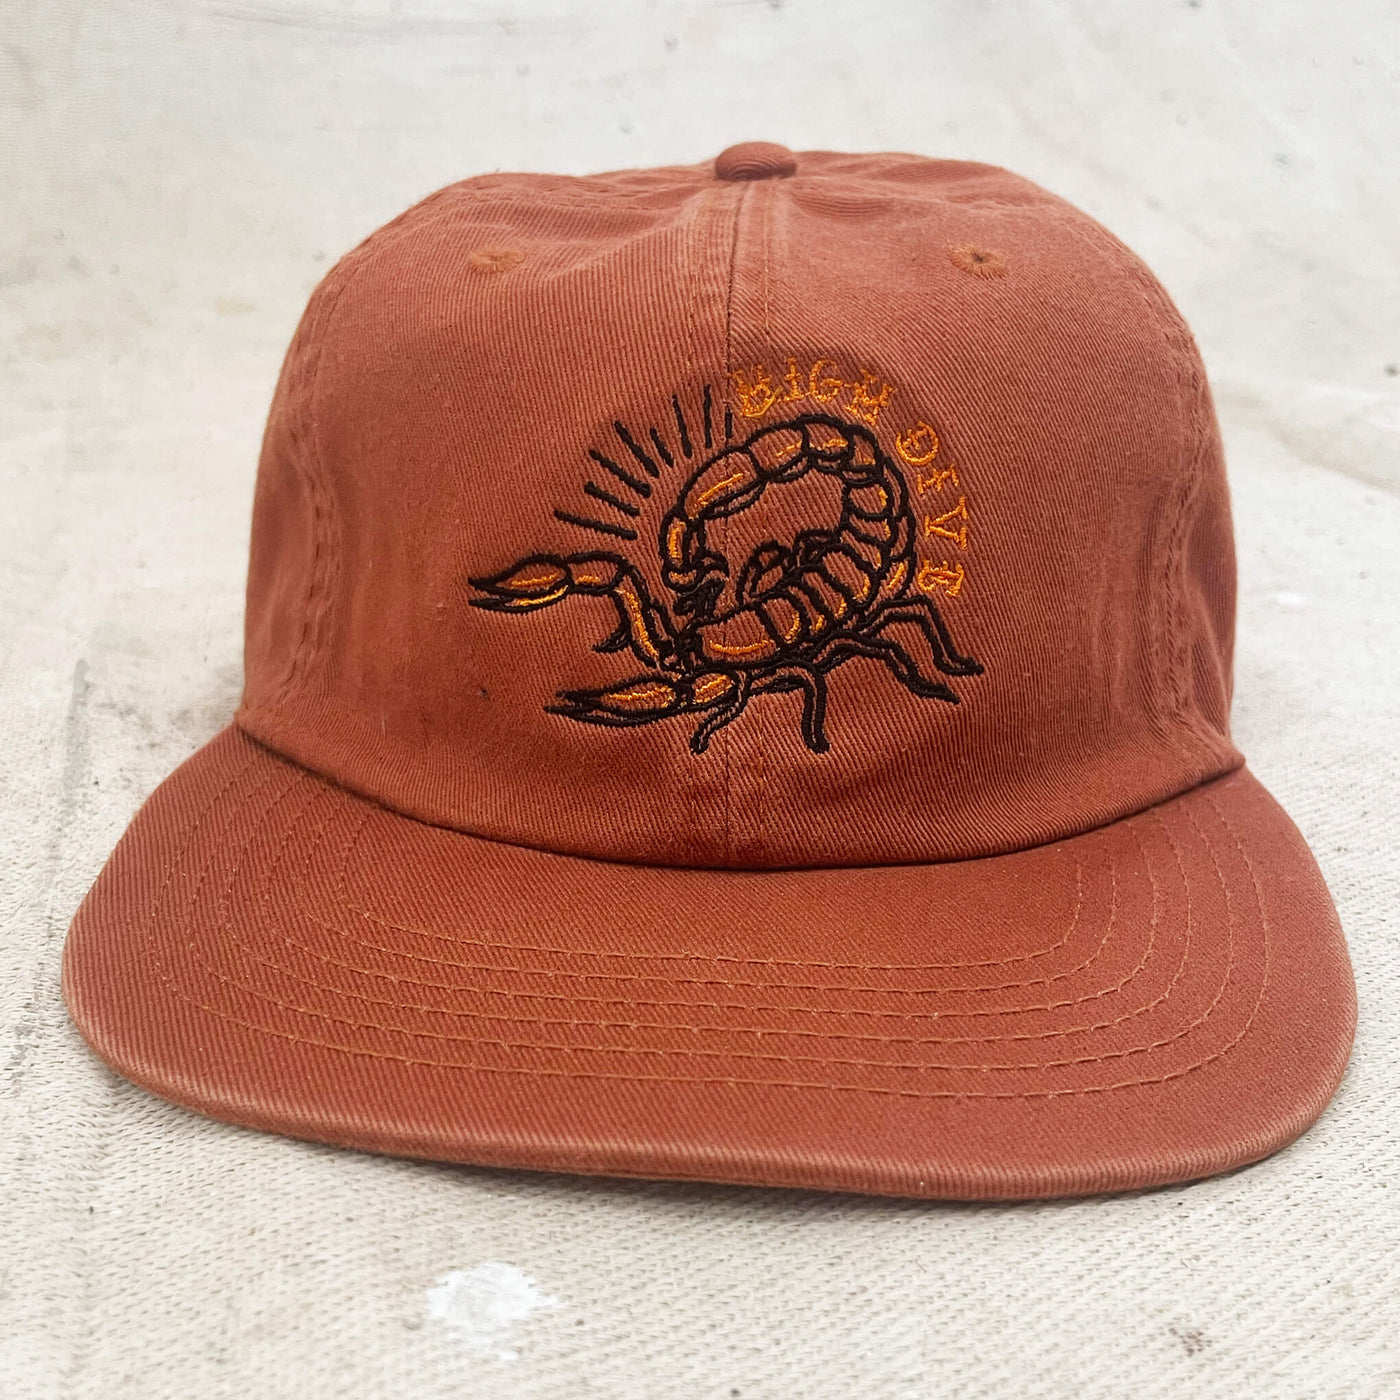 Scorpion Cap